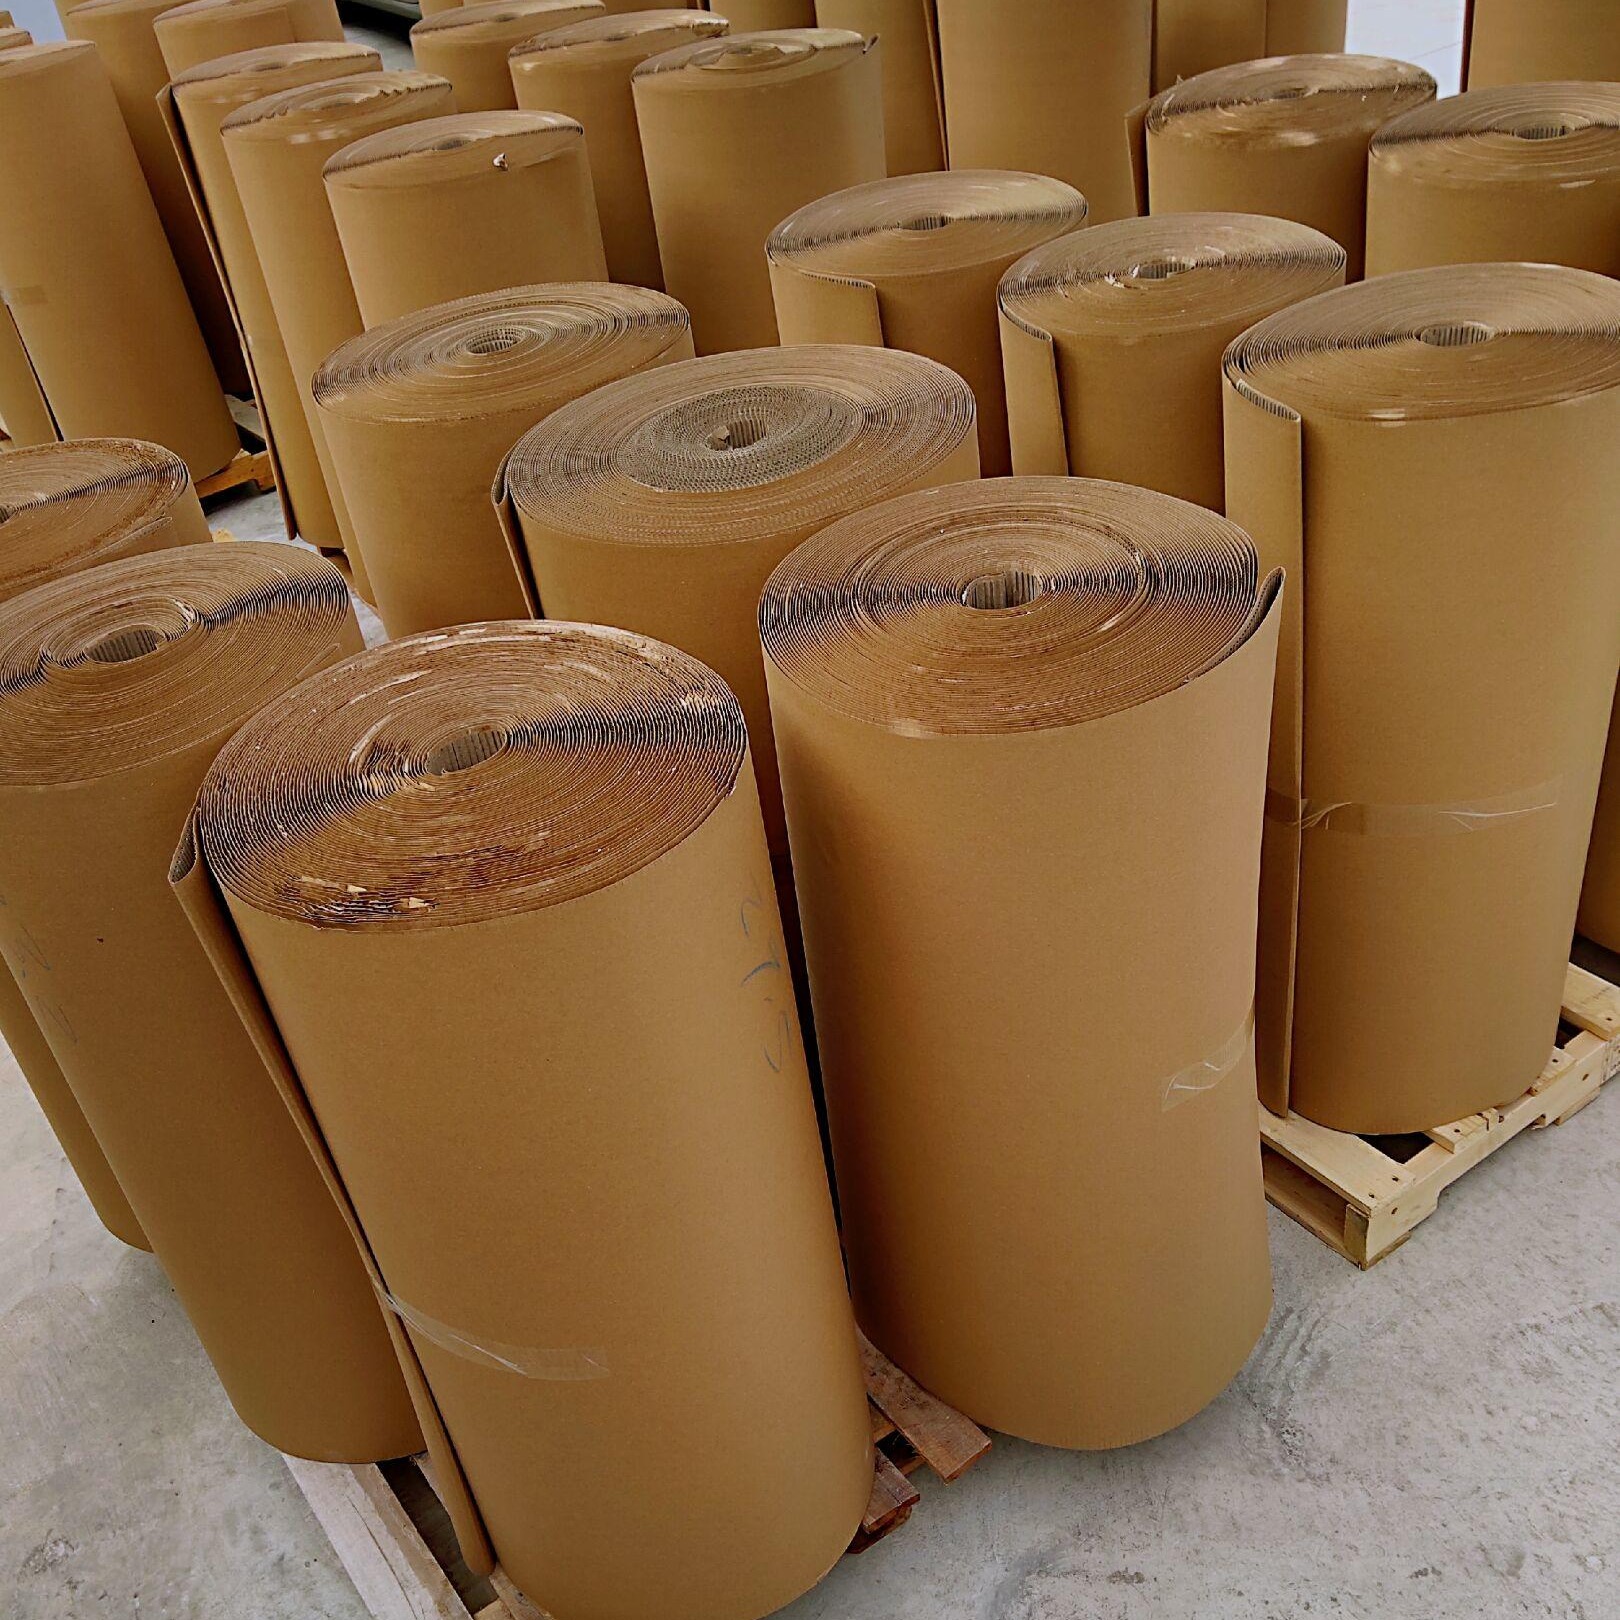 惠州瓦楞纸卷 惠州纸皮厂 家具包装纸皮 衣柜打包纸1.2-1.4米包装卷纸